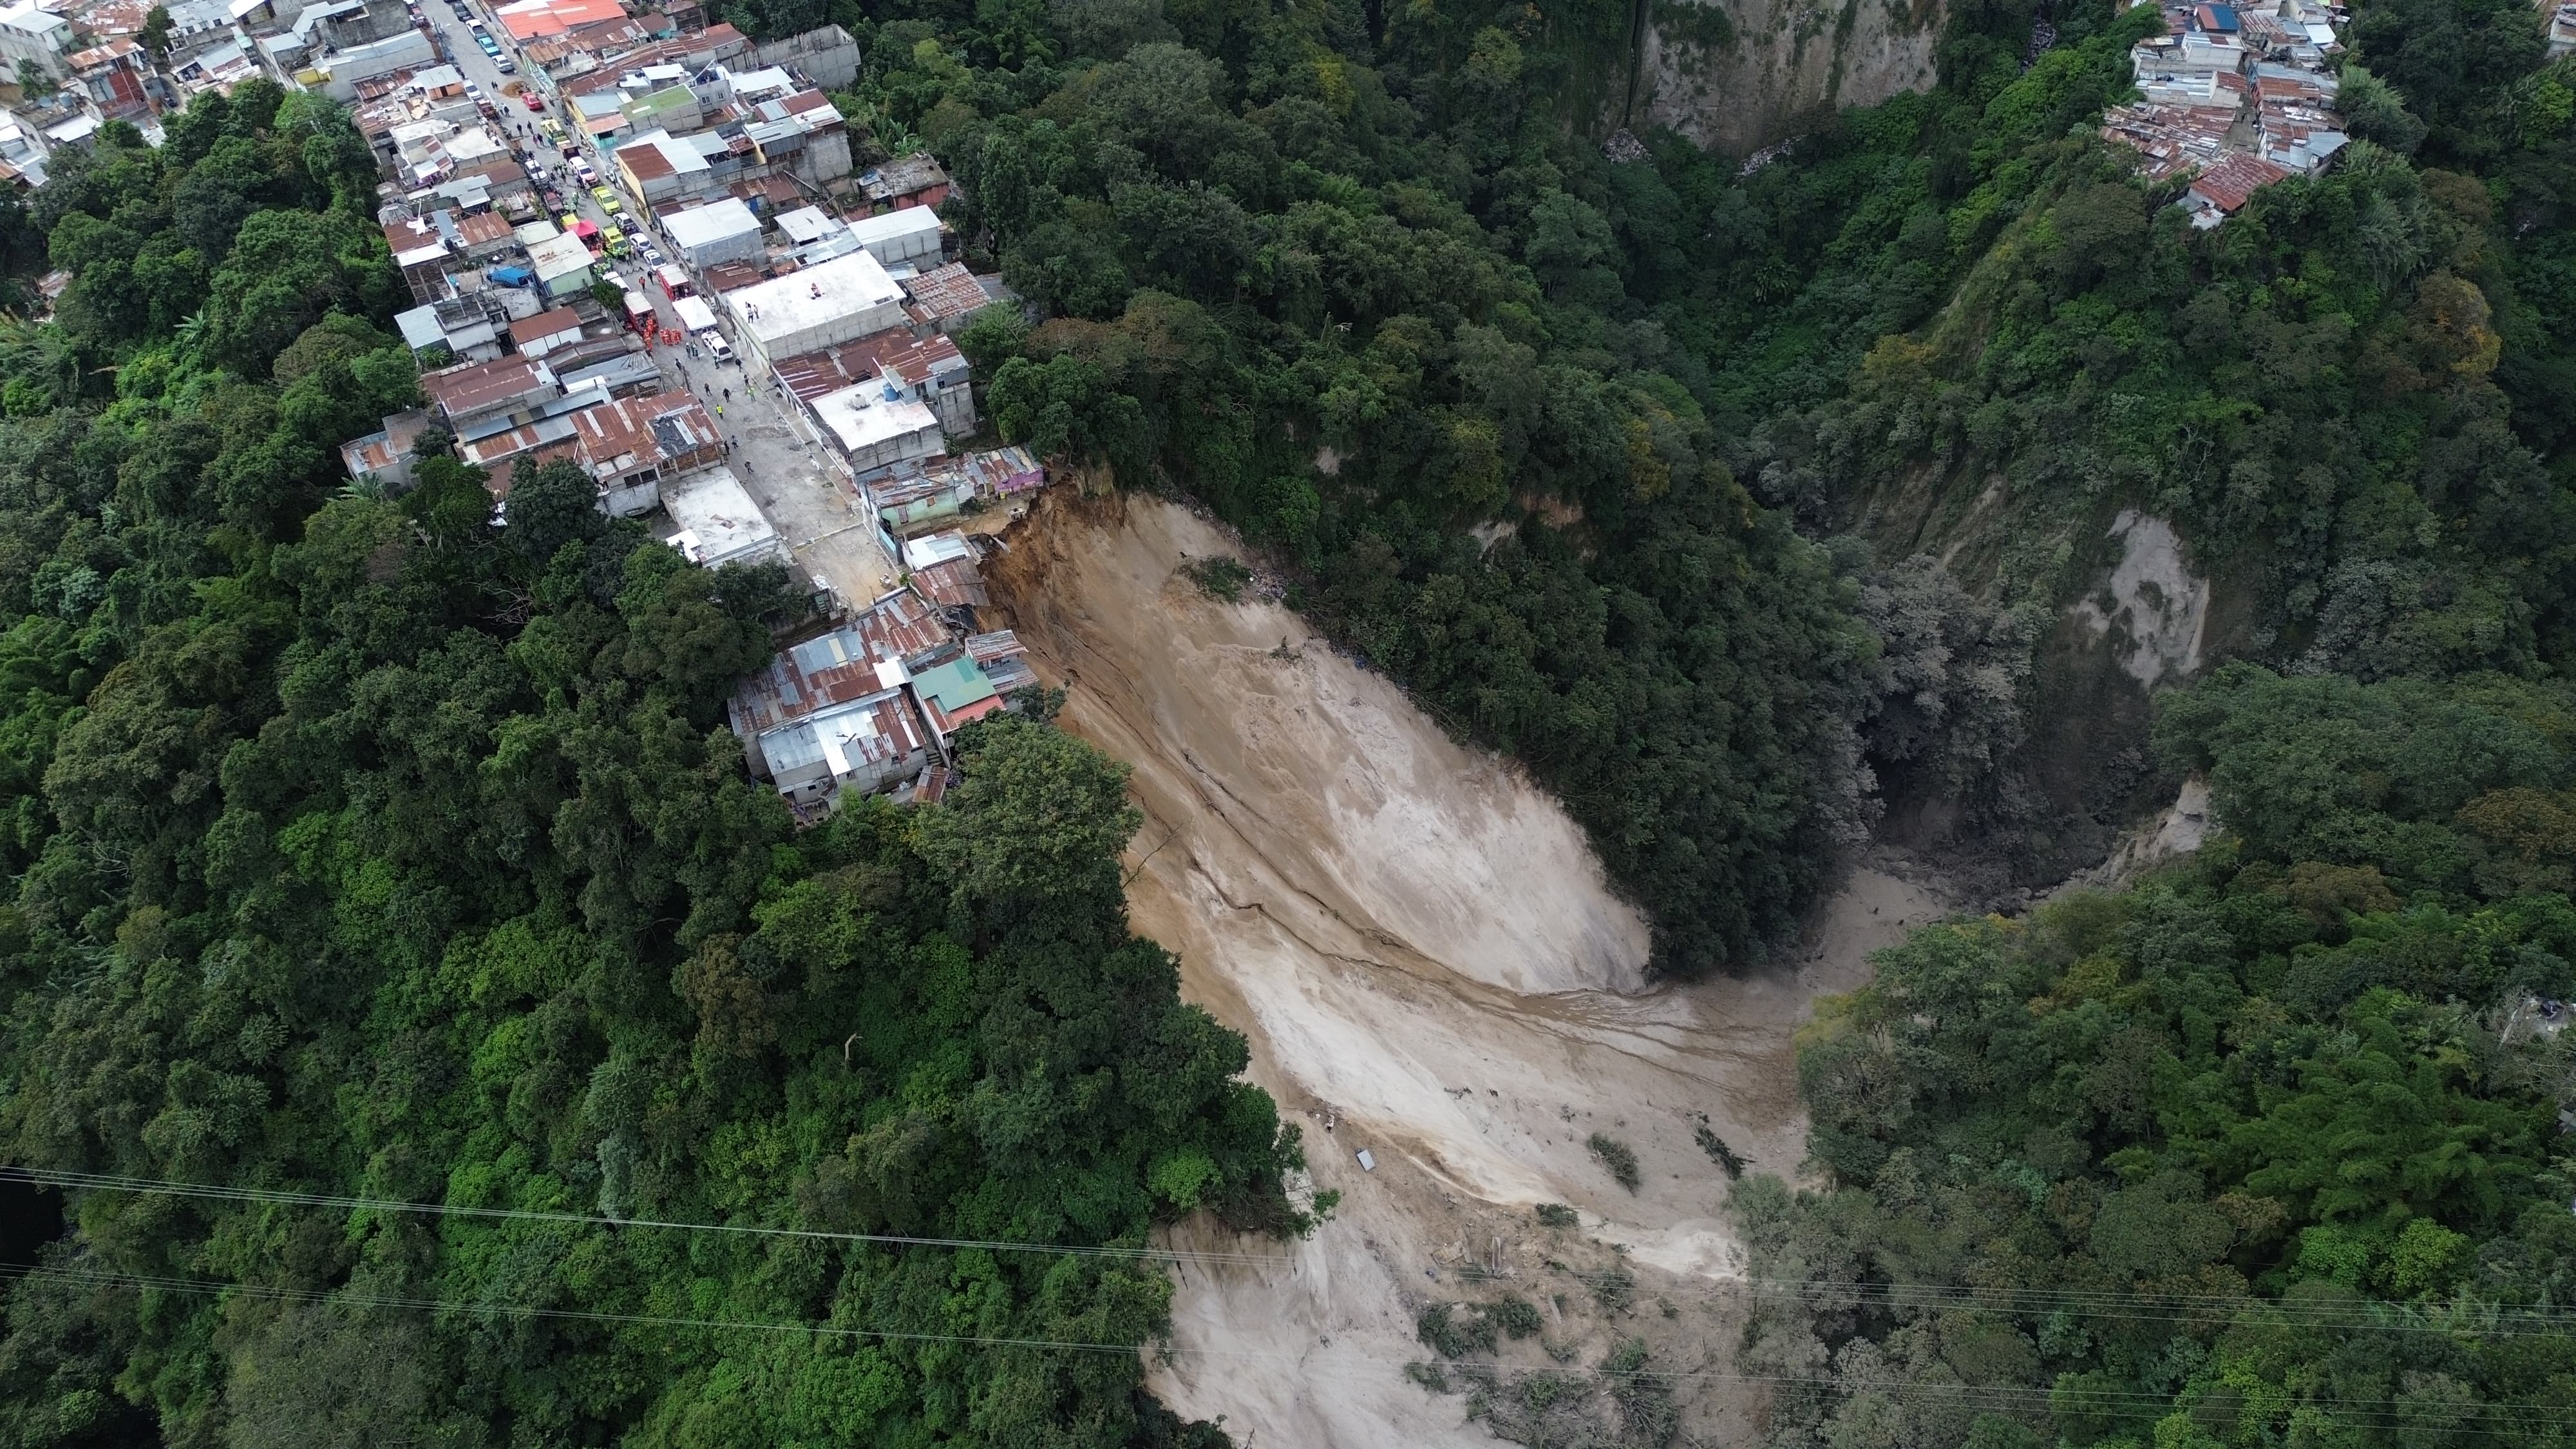 derrumbe zona 3 ciudad de Guatemala'